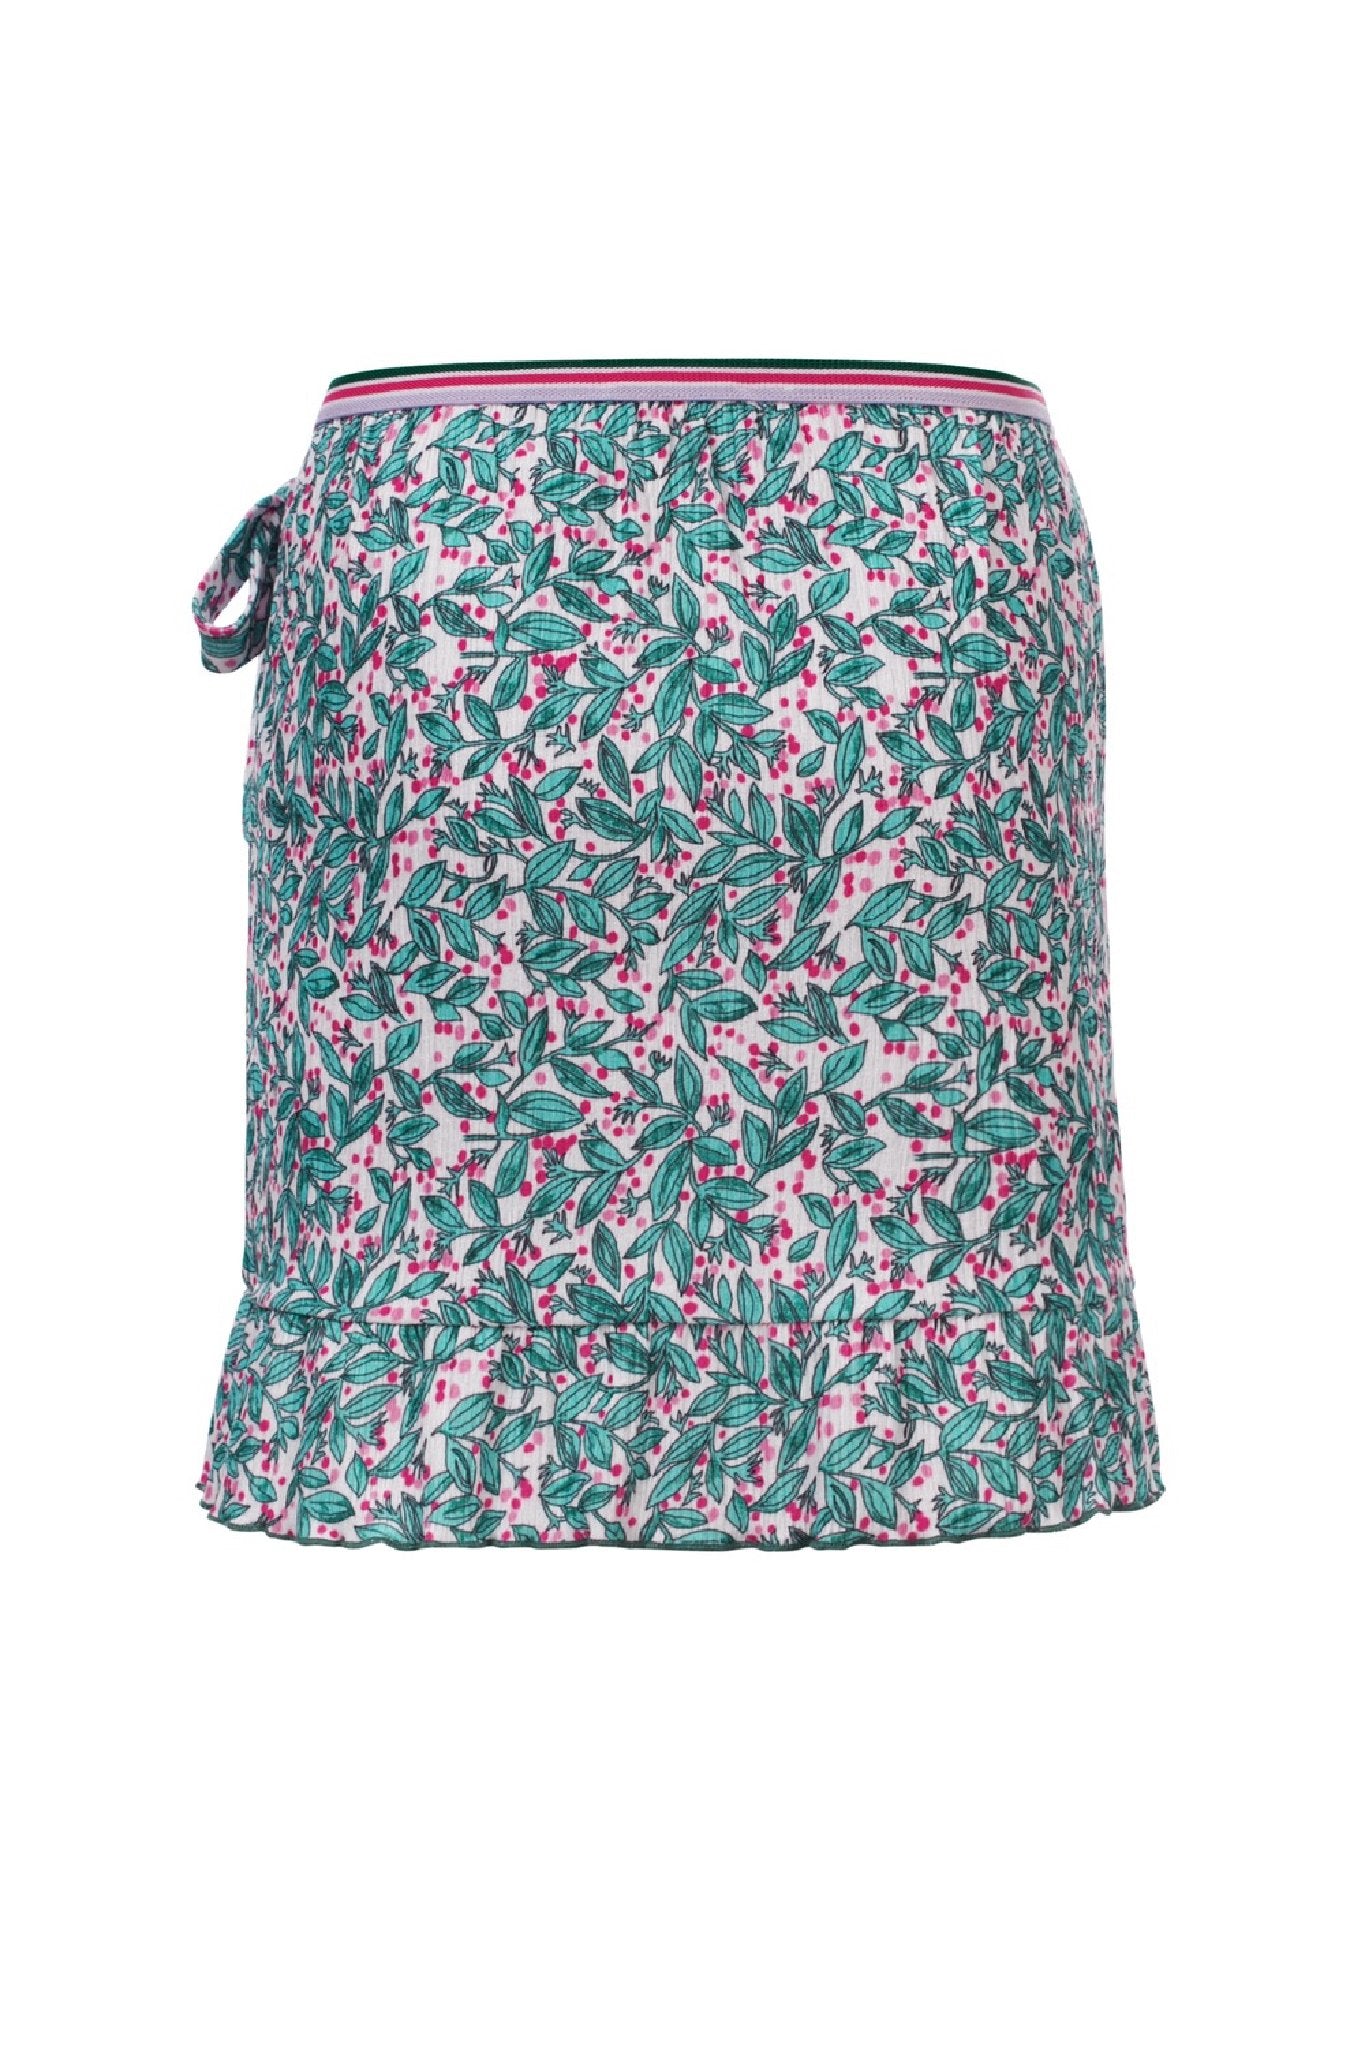 Meisjes Little woven  skirt ruffl van LOOXS Little in de kleur Bardot Stripe Y/D in maat 128.